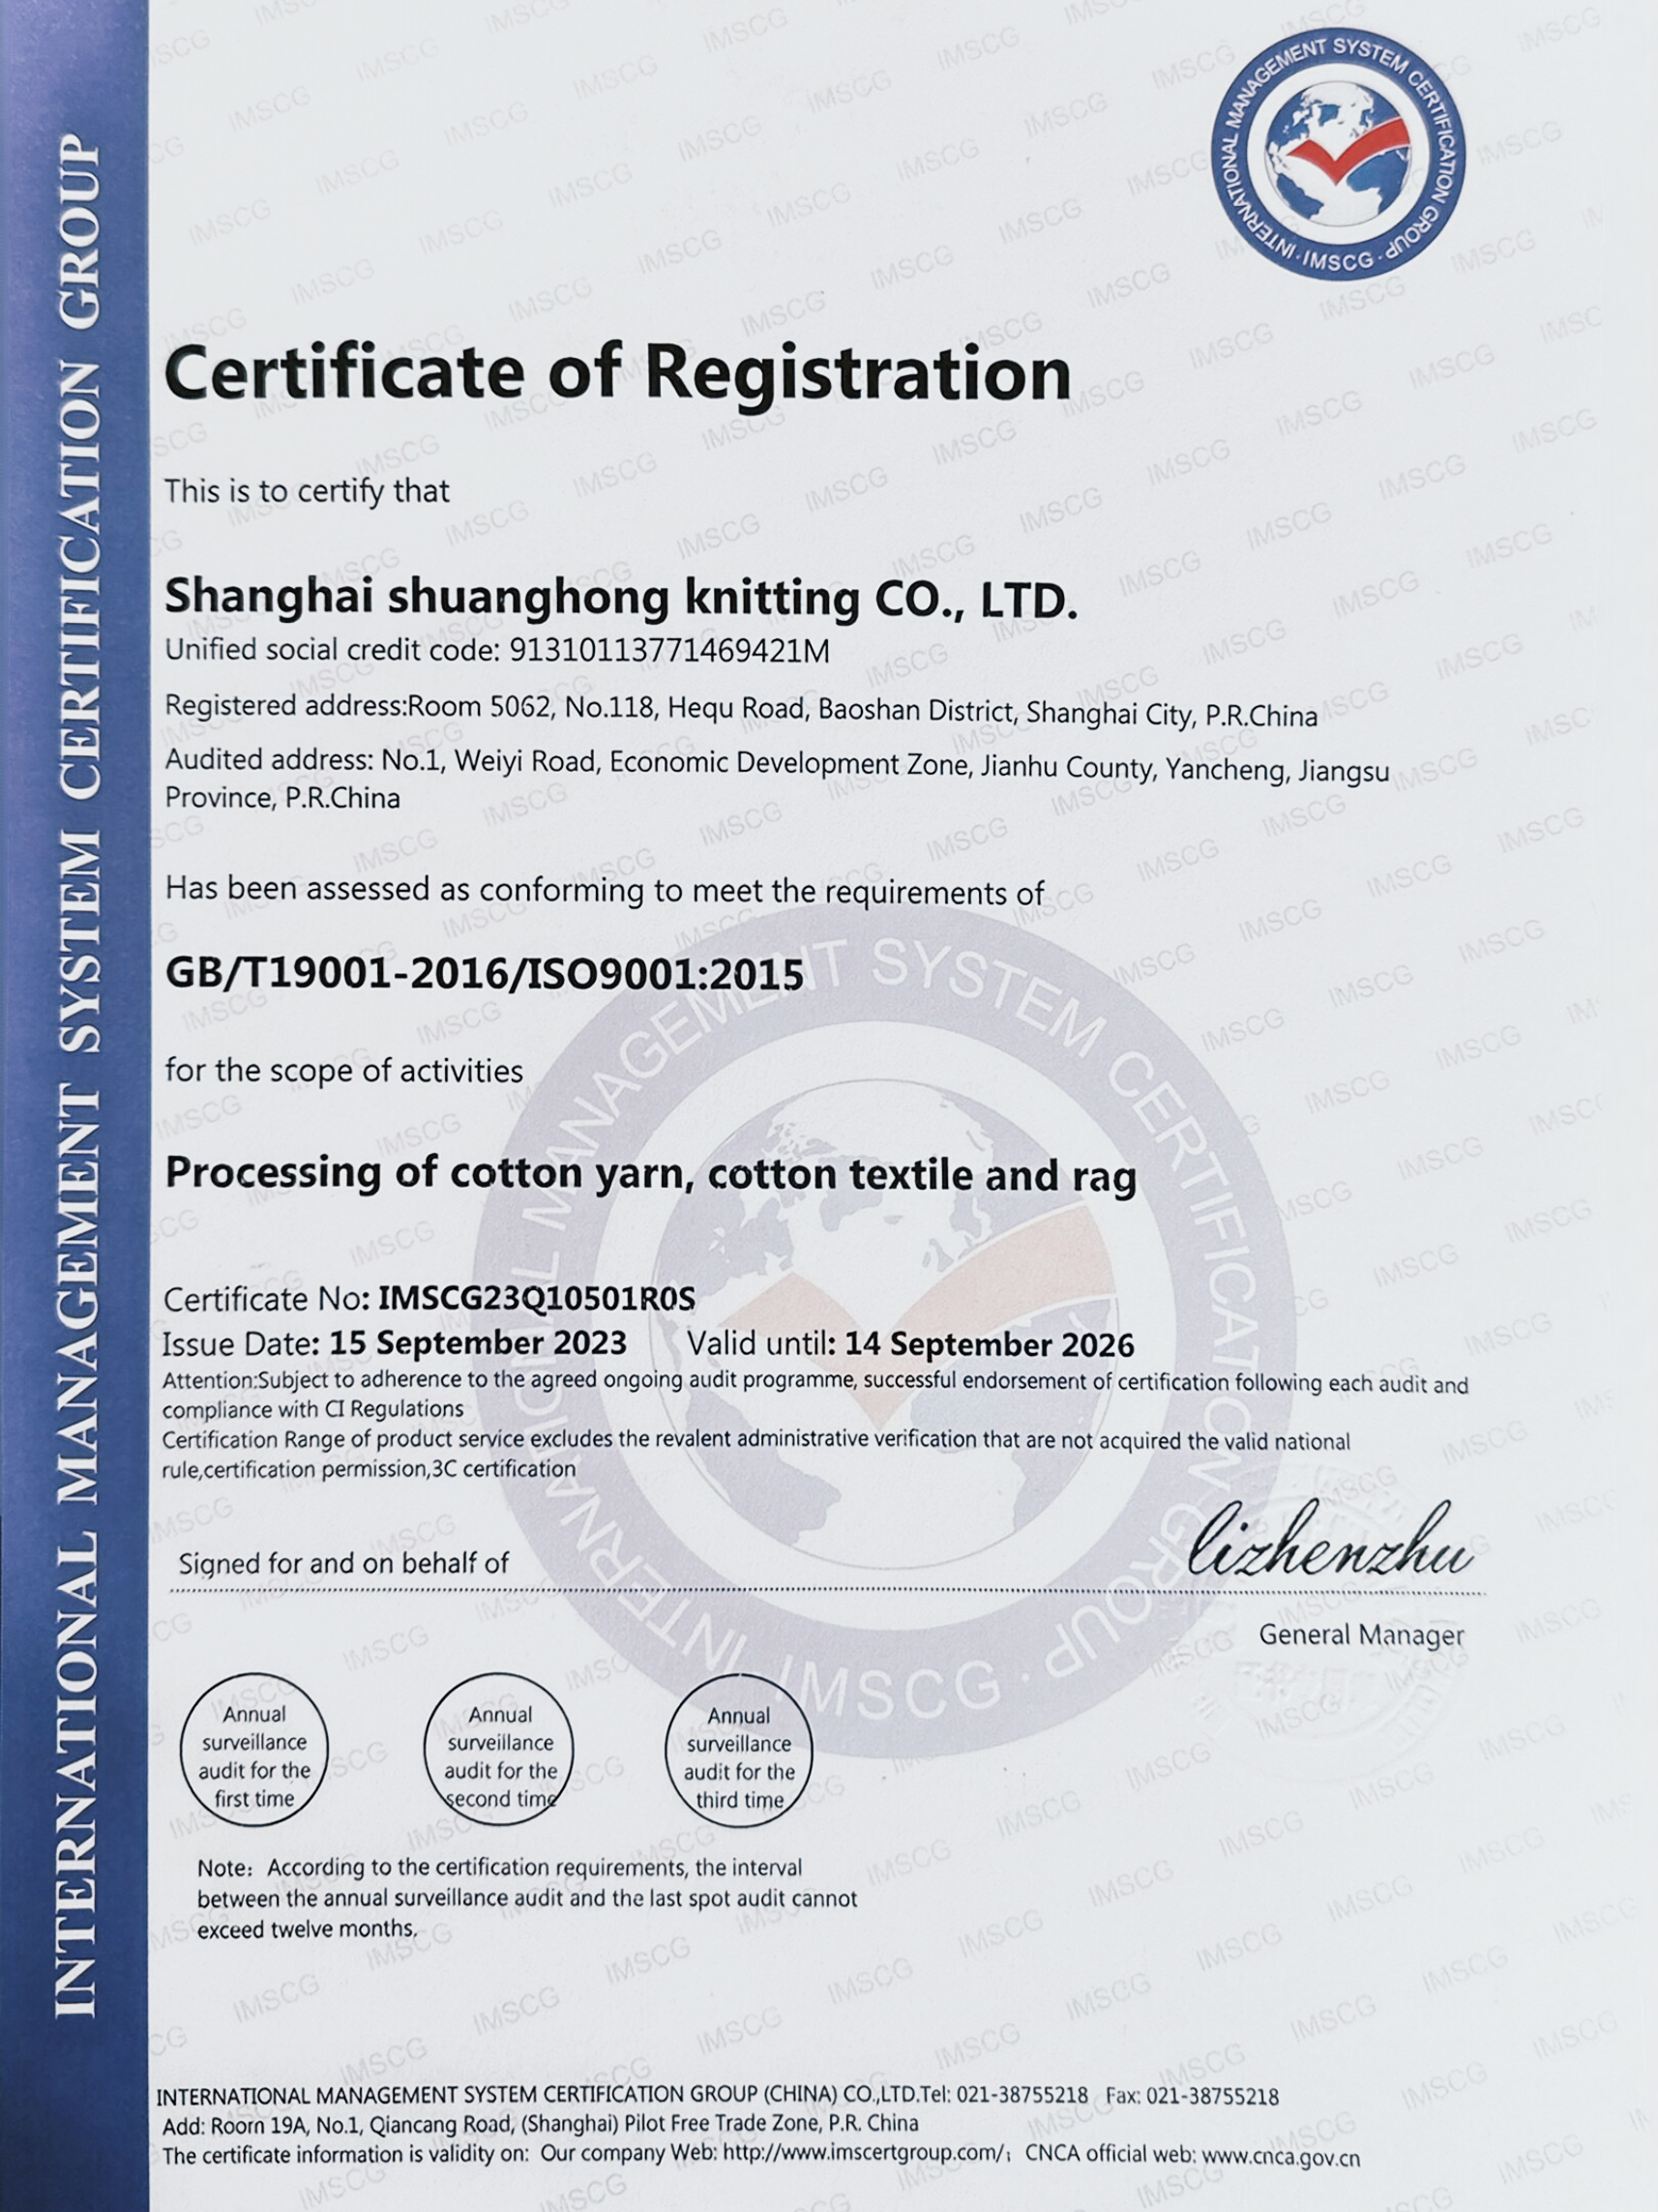 Shanghai Shuang Hong Knitting Co.,Ltd.-IMSCG